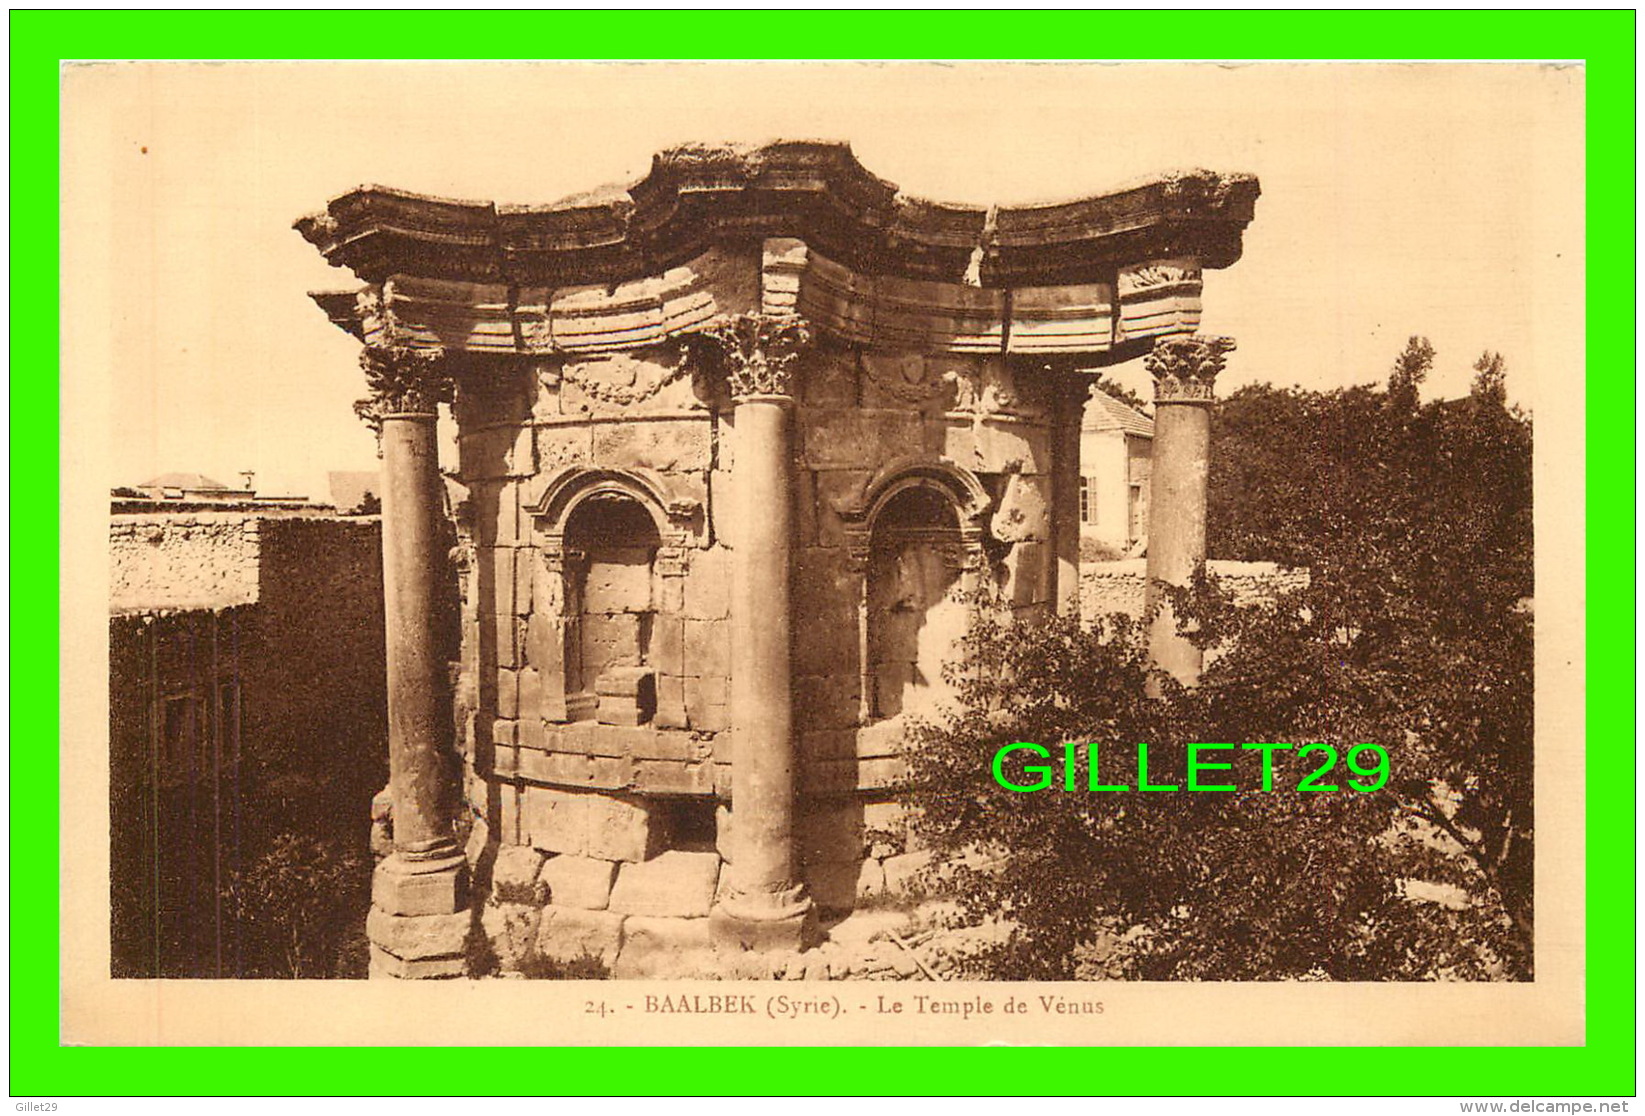 BAALBEK, SYRIE - LE TEMPLE DE VÉNUS - COLLECTION ORIENT-MONUMENTS - PALMYRA HOTEL - SÉRIE C - - Syrie